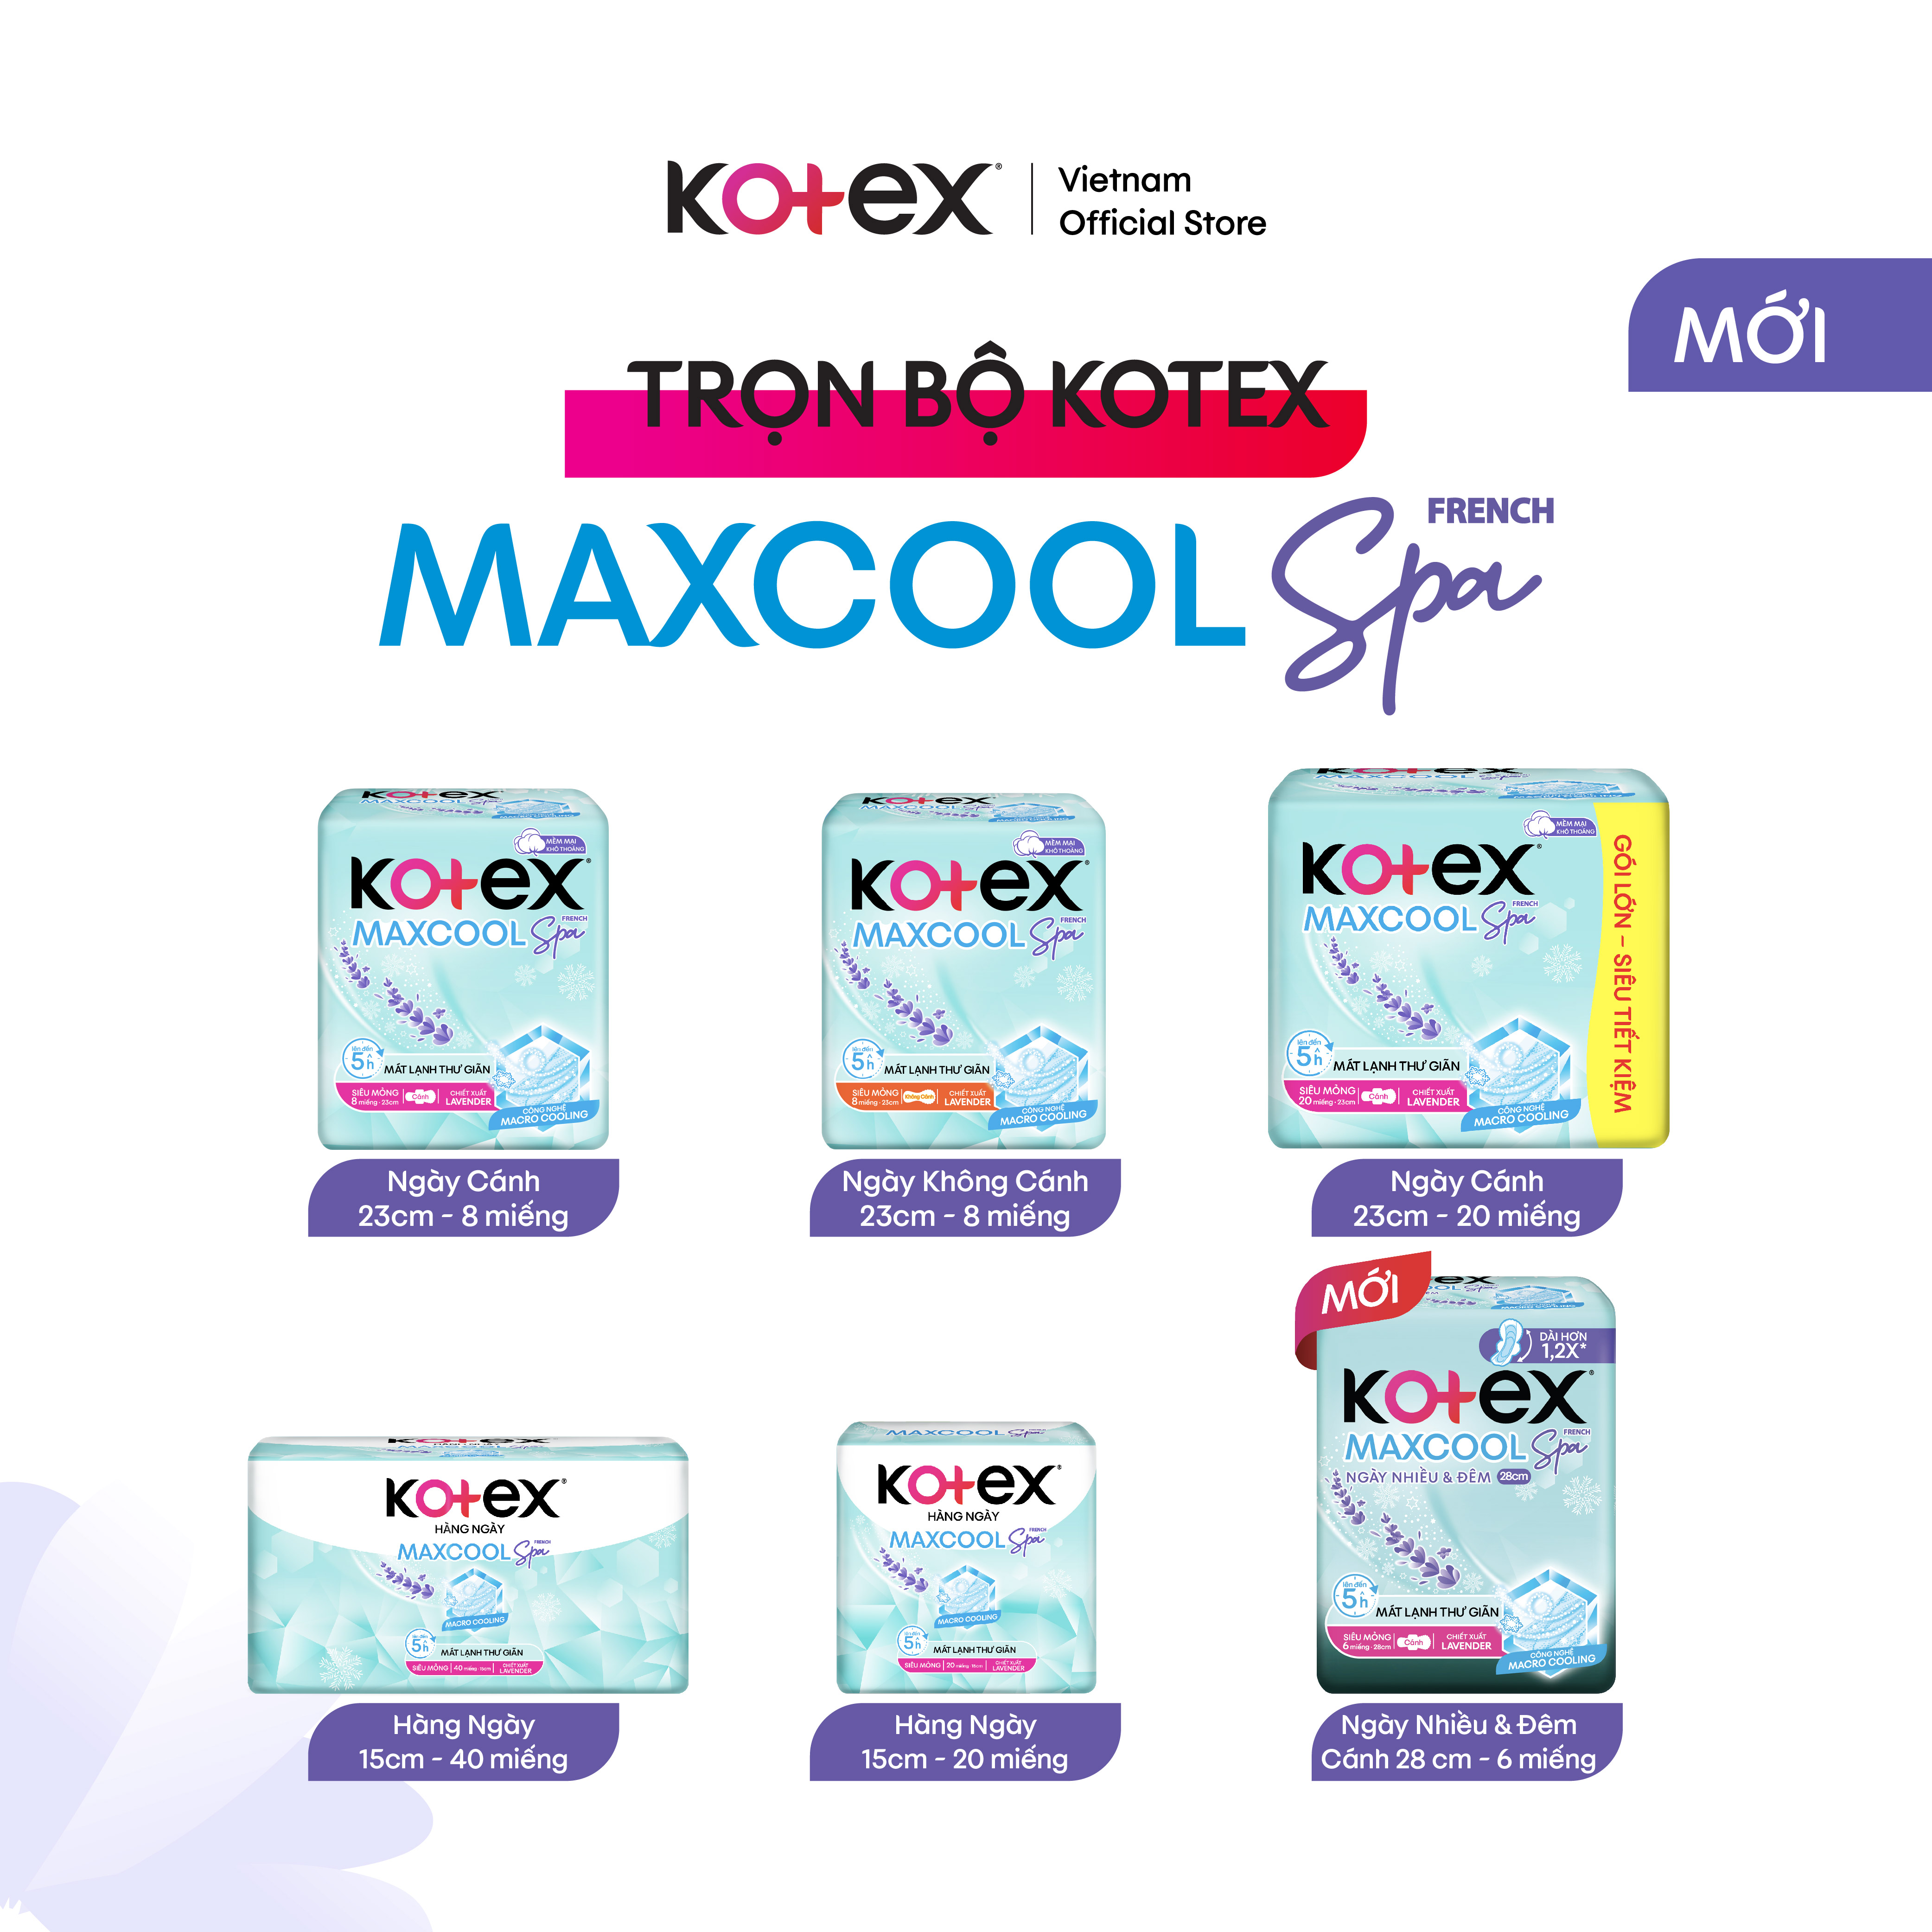 Combo 8 gói băng vệ sinh Kotex Maxcool French Spa siêu mỏng cánh 23cm (8M/gói)